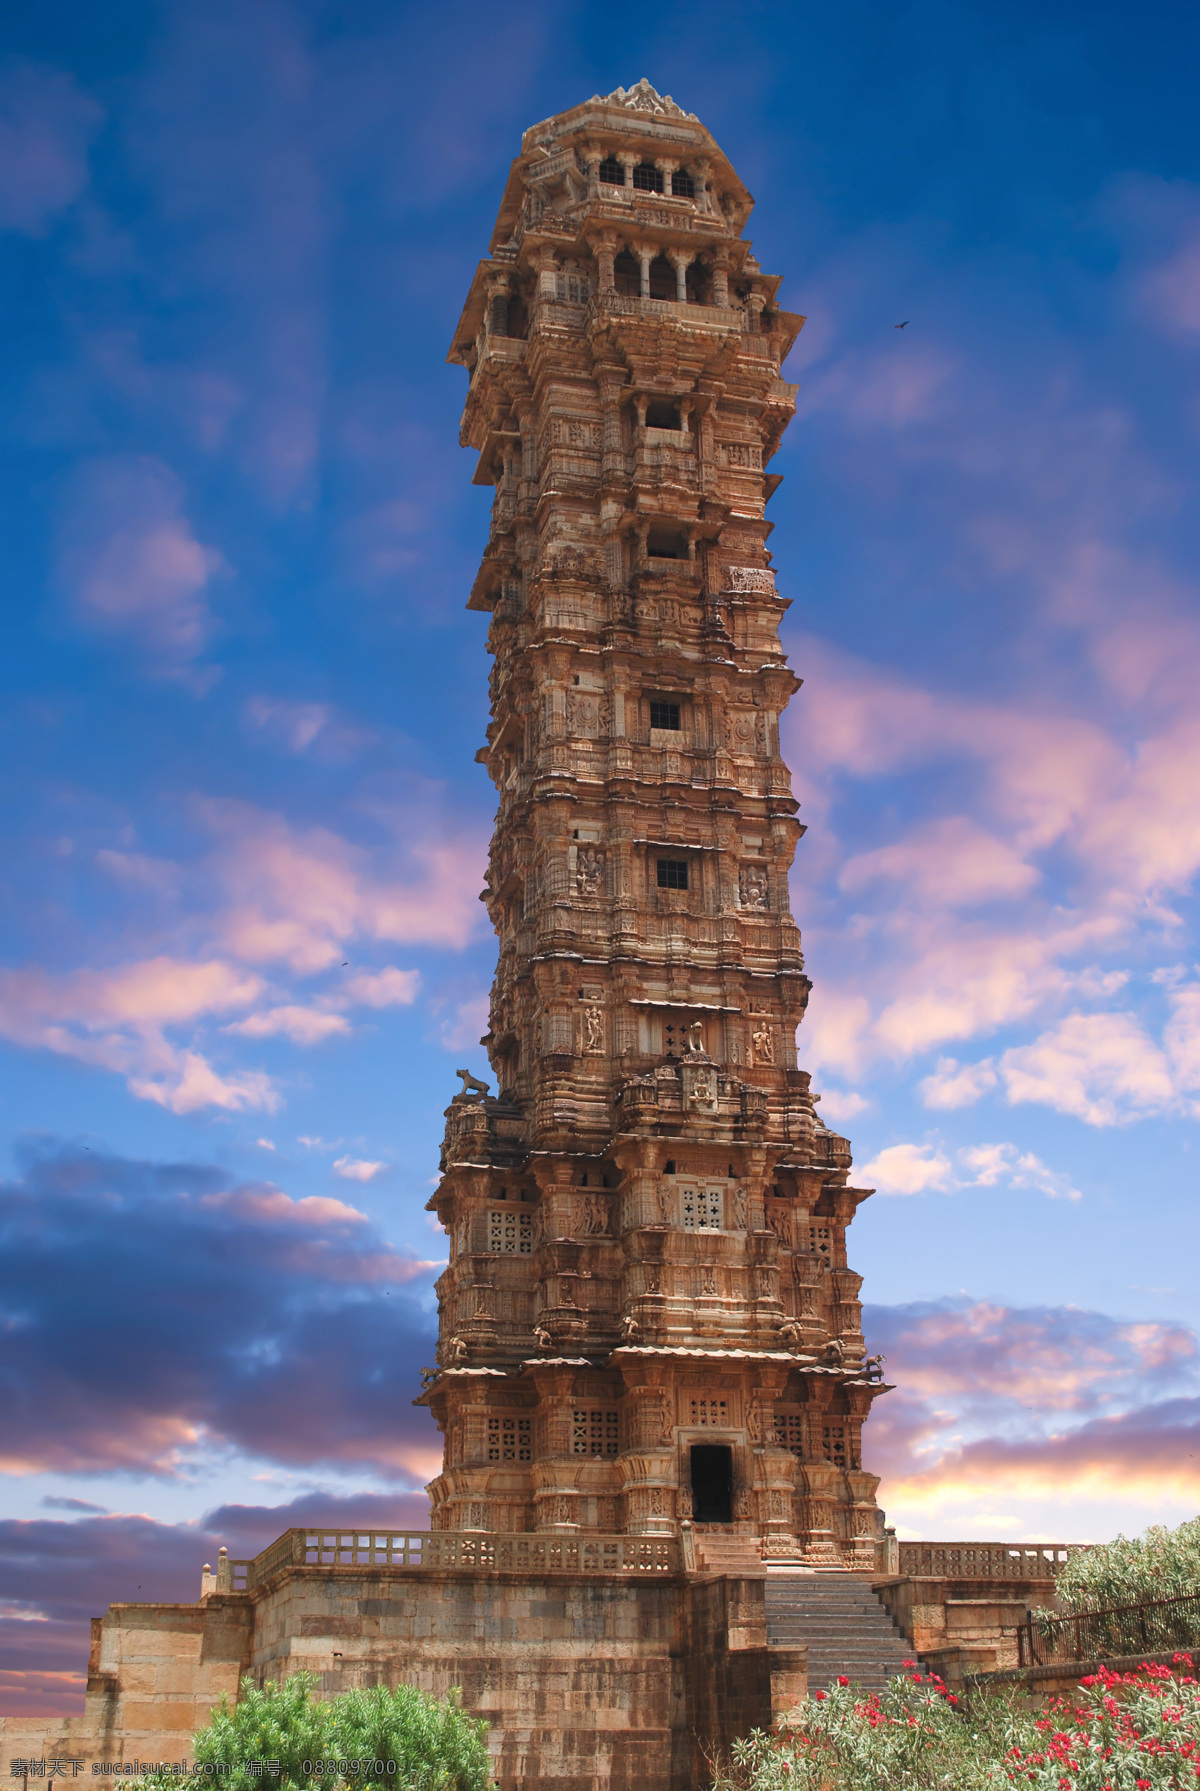 印度 寺庙 风景 印度风景 文明古迹 克久拉霍 标志性建筑 建筑风景 旅游景点 美丽风光 美景 风景摄影 风景名胜 风景图片